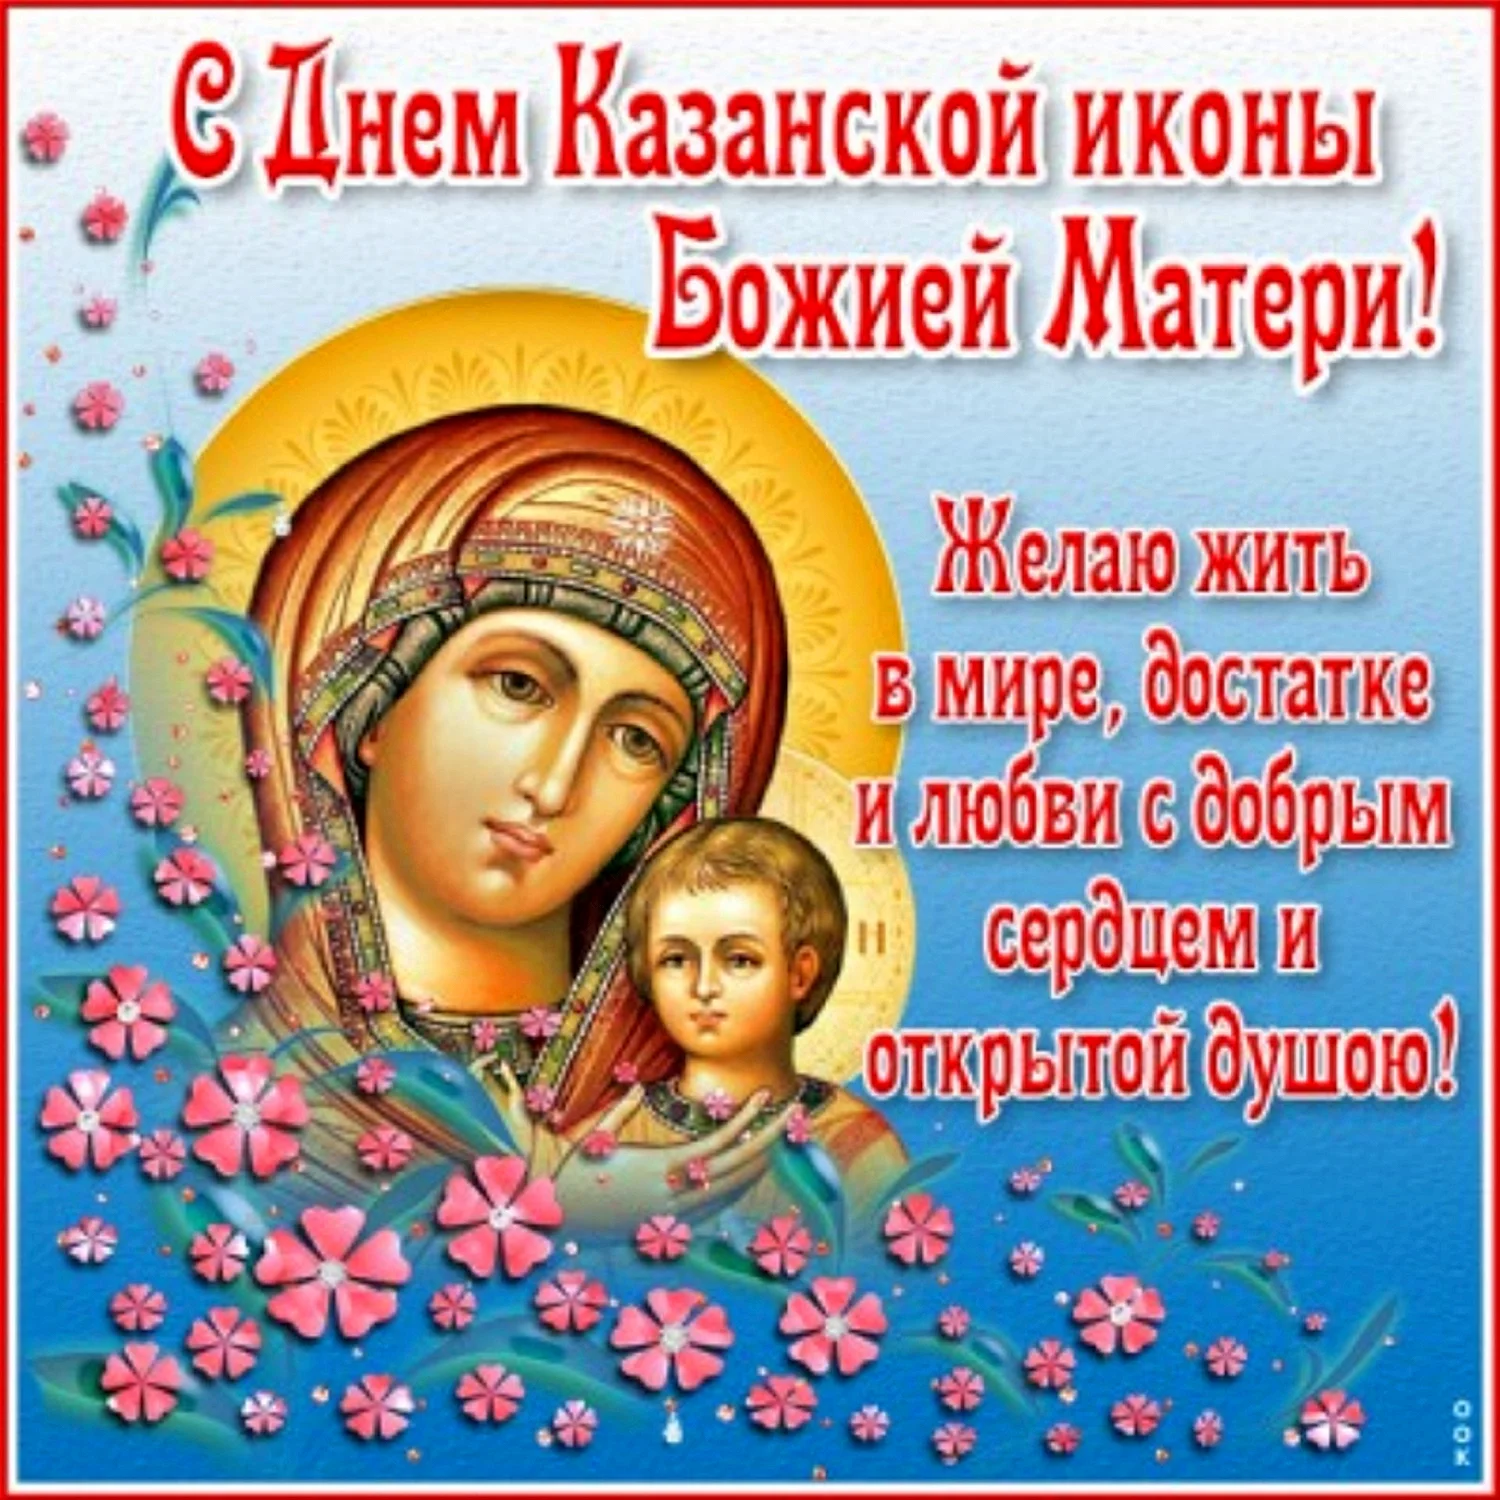 фото казанской божьей матери с праздником поздравить